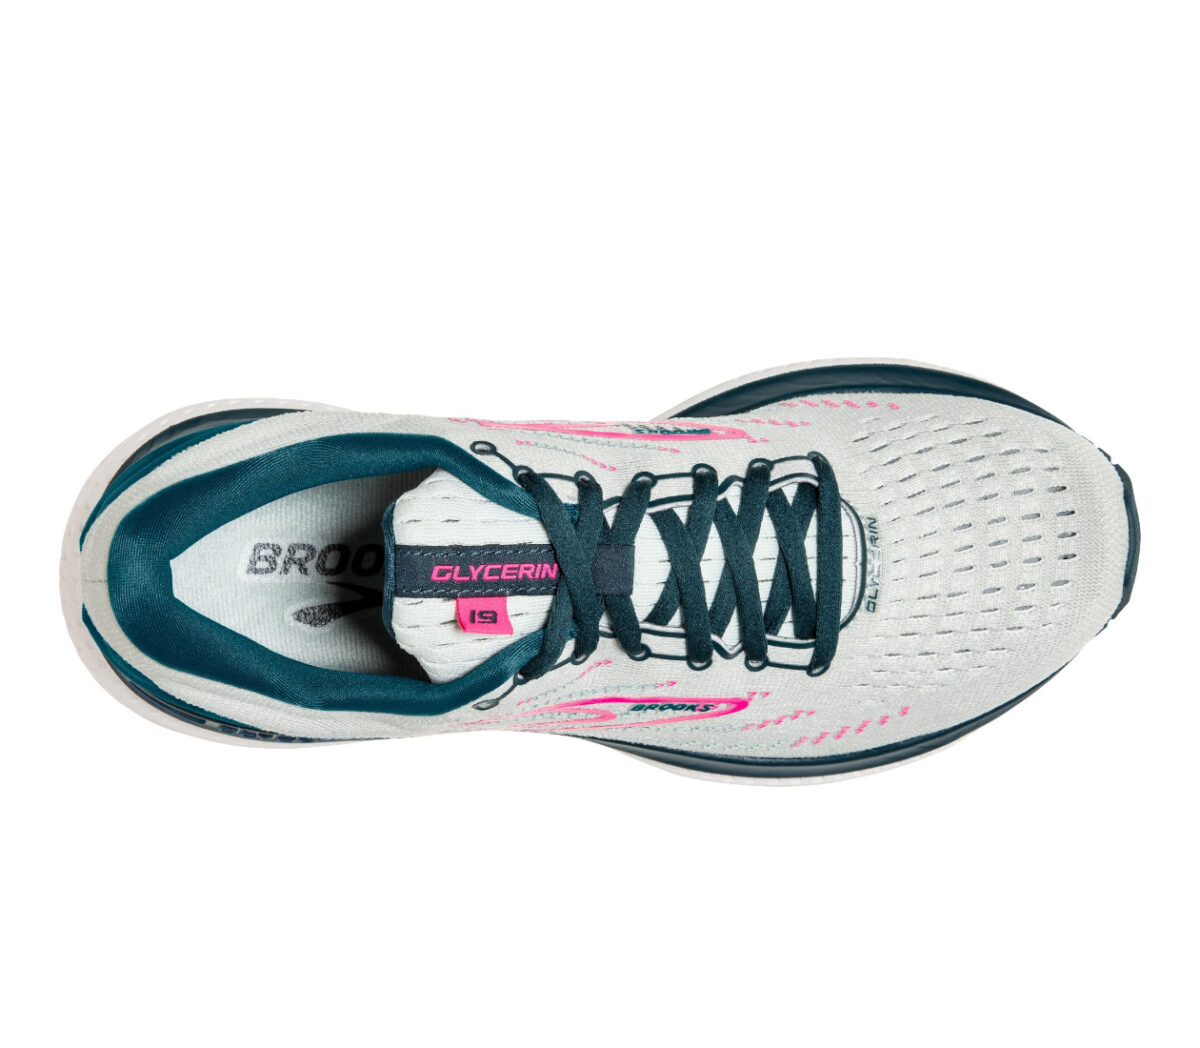 tomaia scarpa da running stabile da donna brooks glycerin gts 19 grigio rosa